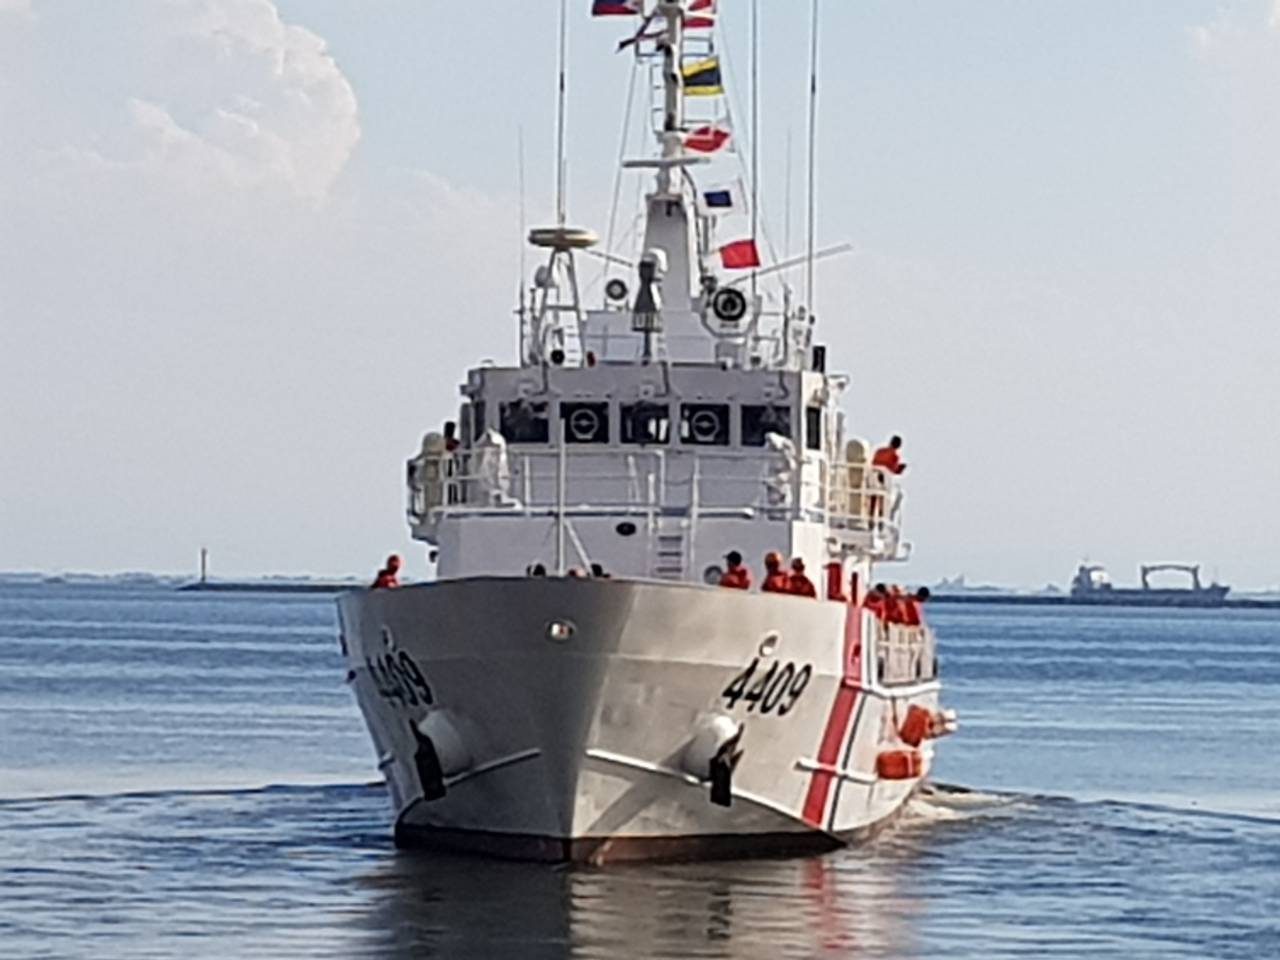 PH Coast Guard vessel to patrol around Boracay during closure